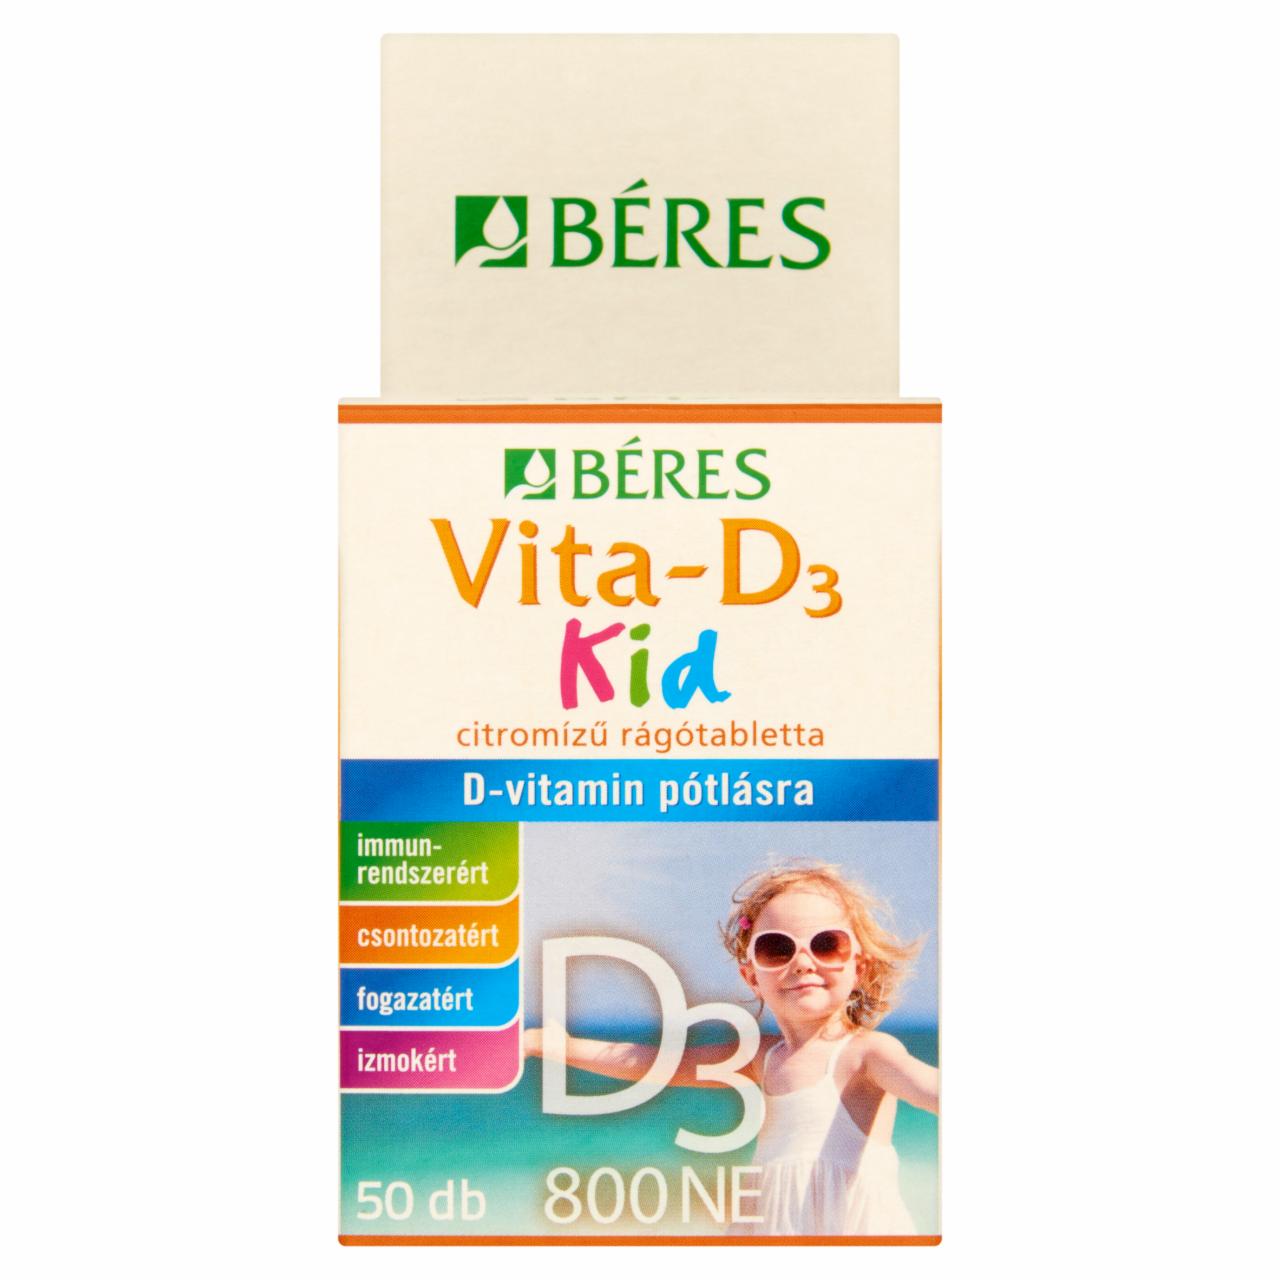 Képek - Béres Vita-D₃ Kid 800NE rágótabletta 50 db 27,0 g